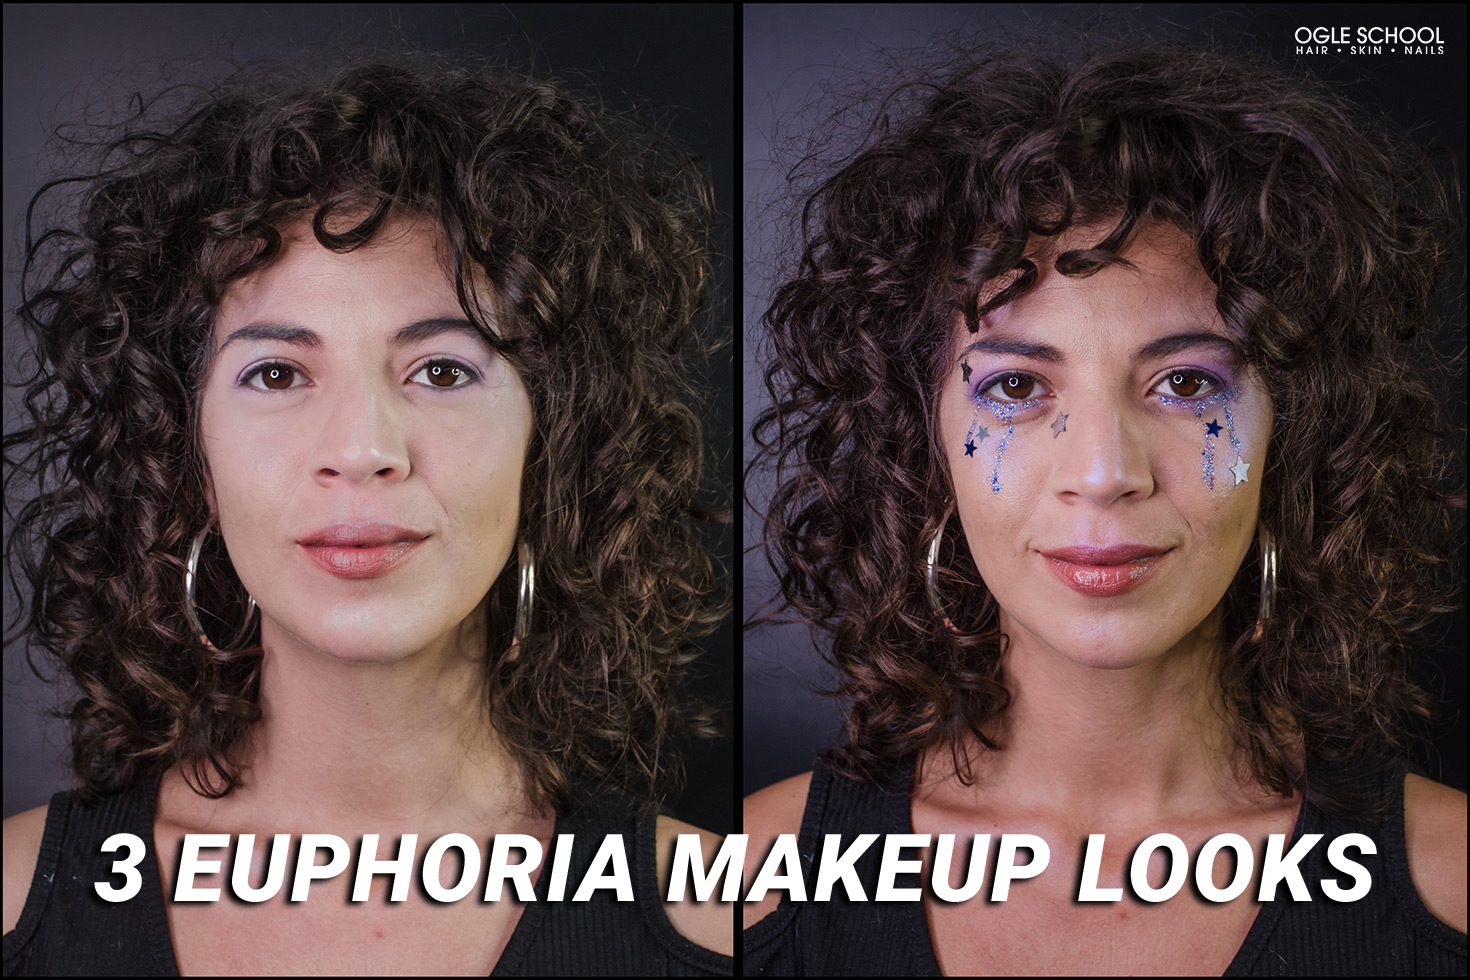 5 Hair and Makeup Looks on Euphoria Season 2 to Recreate at Home